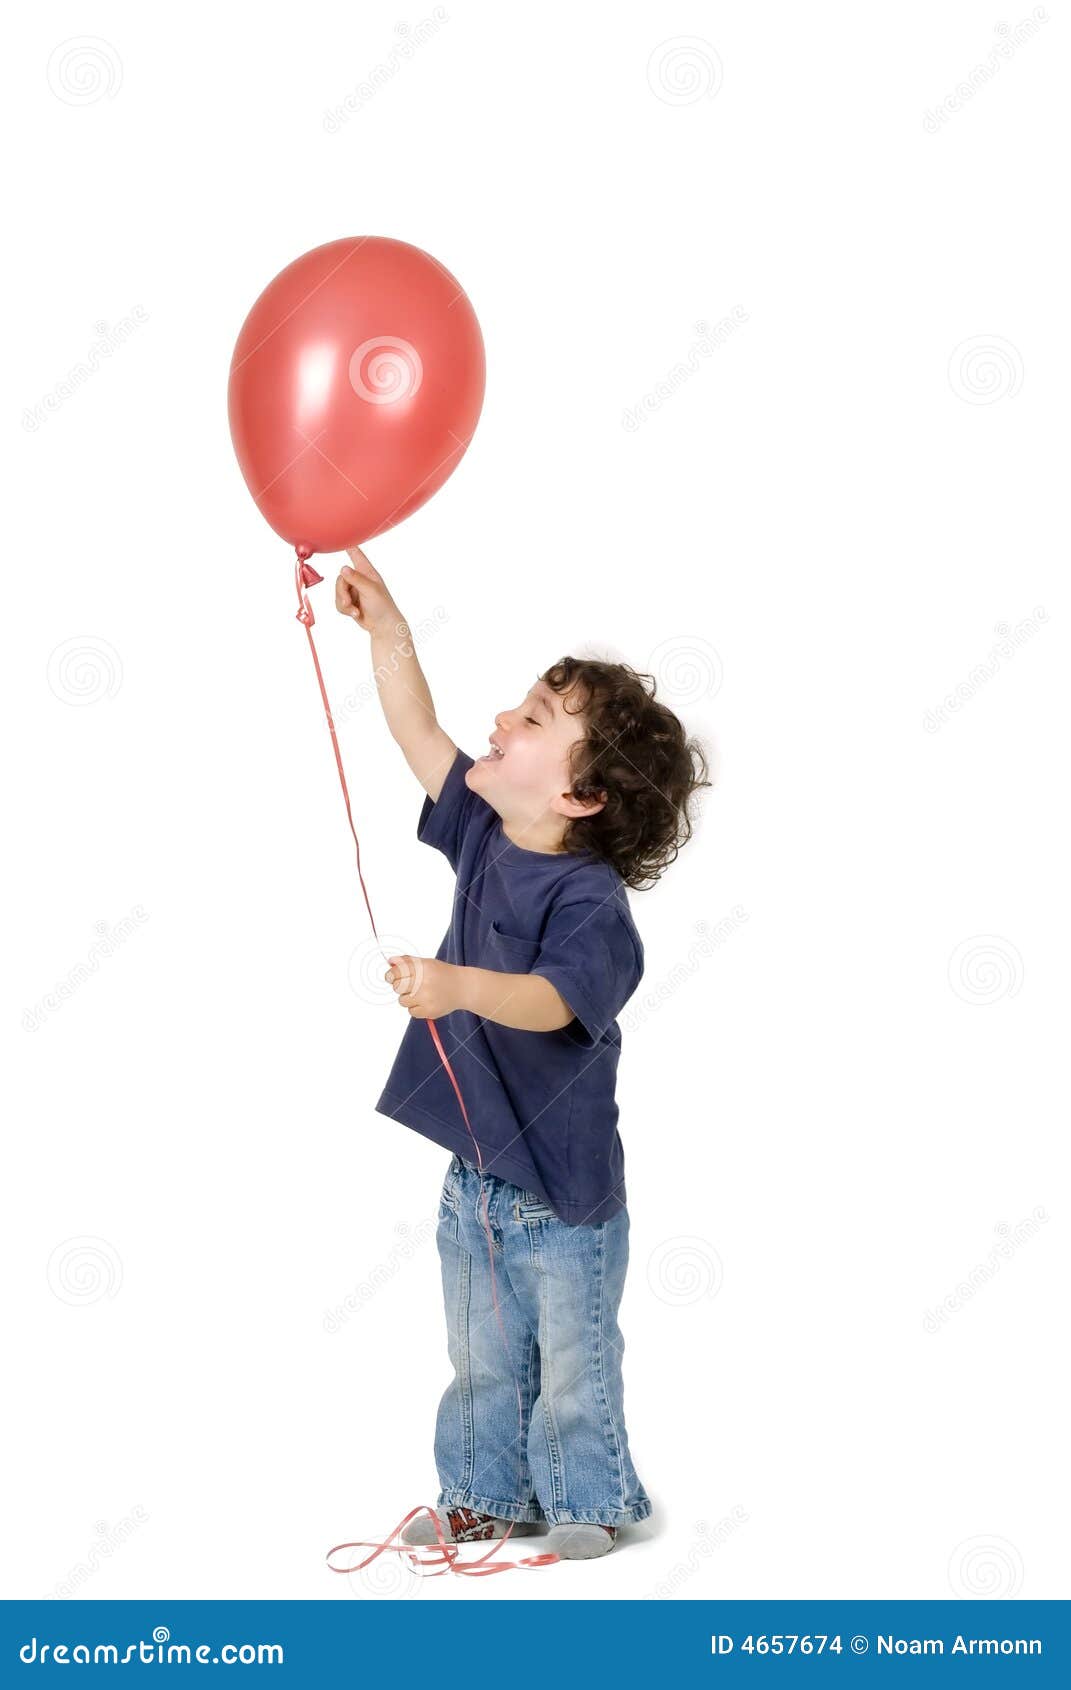 Мальчик с большим шаром. Шарики для мальчика. Шарики воздушные для мальчика. Дети с шариками. Мальчик с шаром.